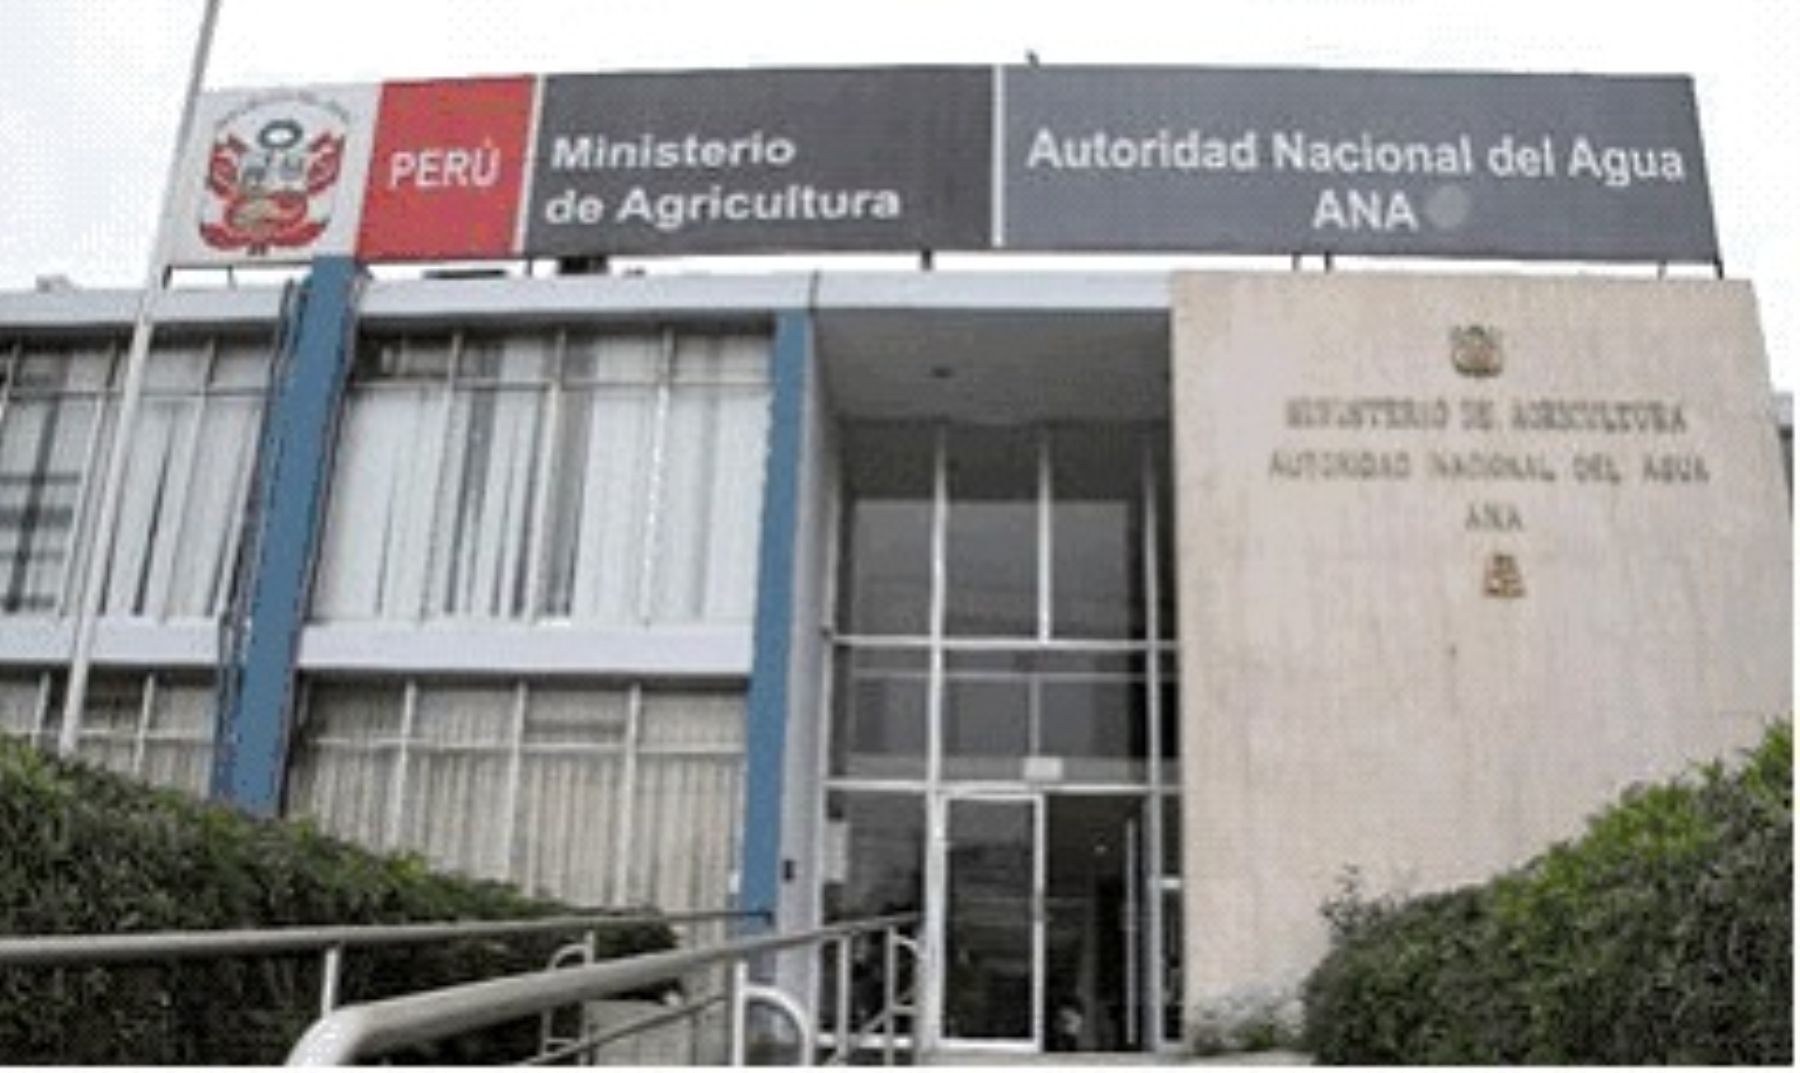 Contraloría General de la República designa a jefes de control interno en tres municipios de Piura. ANDINA/Difusión